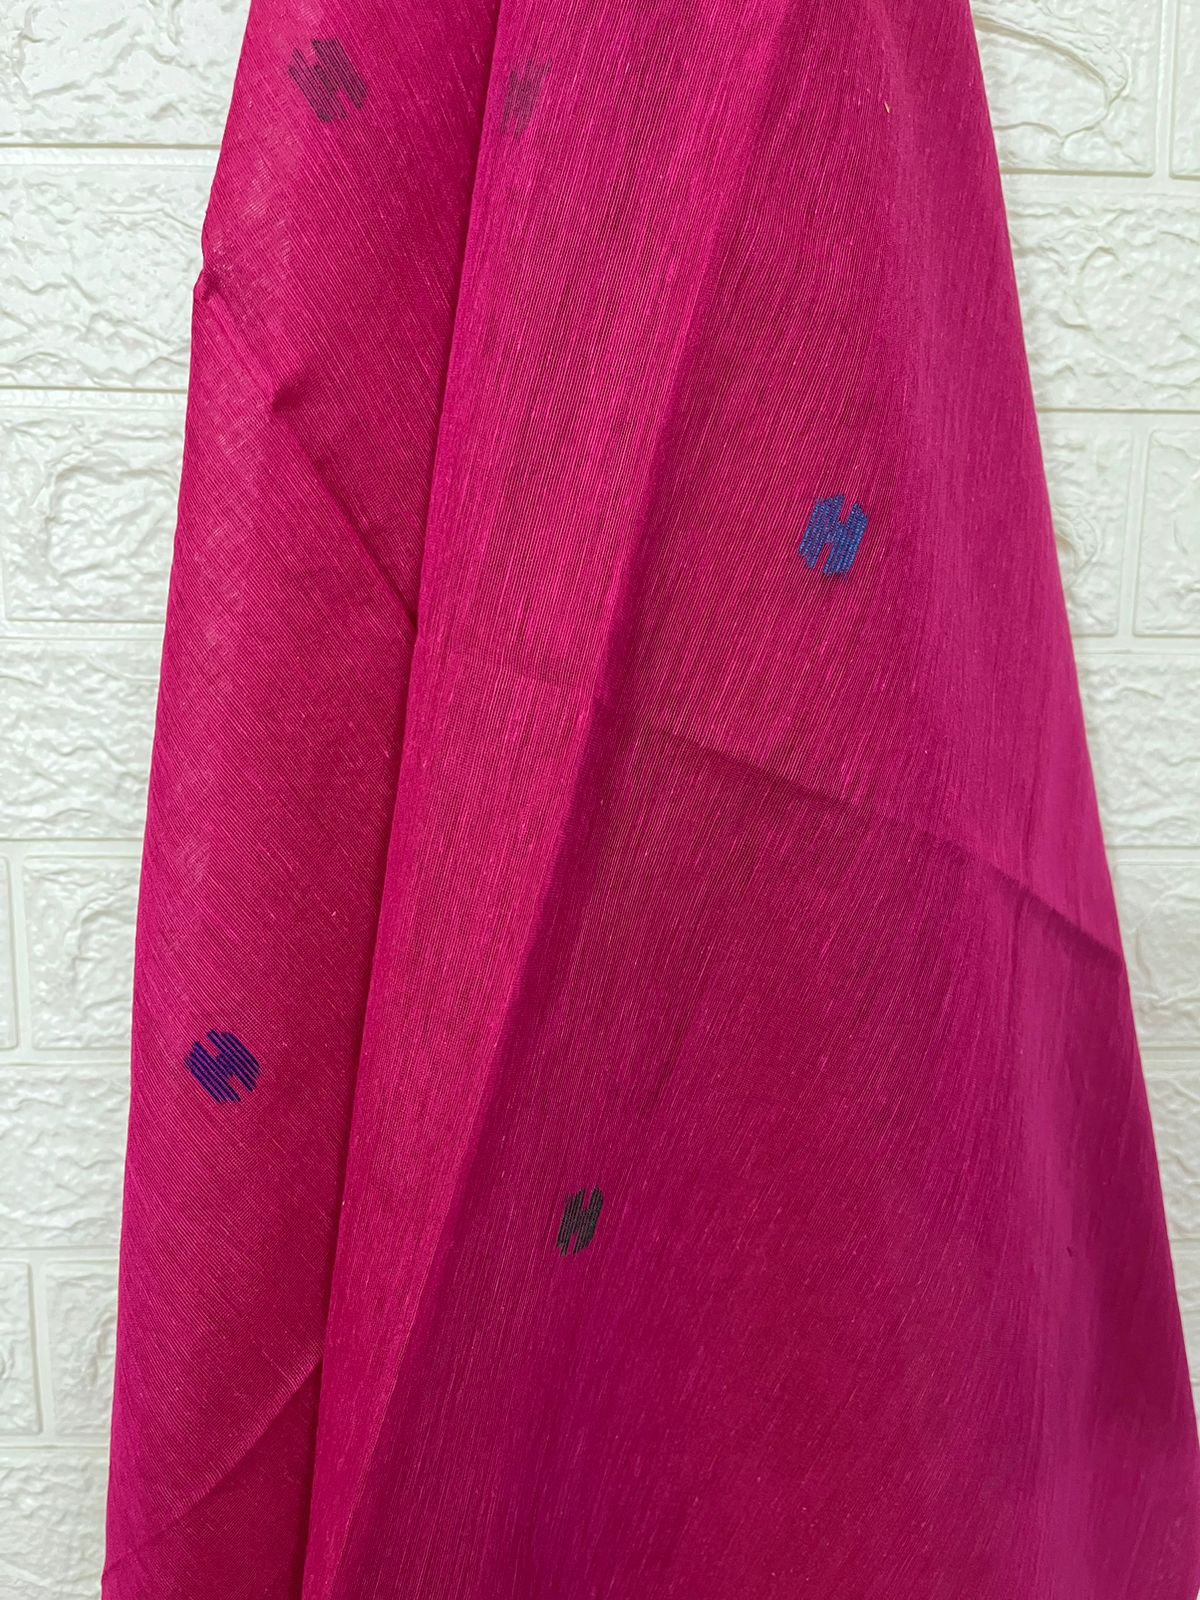 Hot pink paithani organza silk kurti & dupatta set